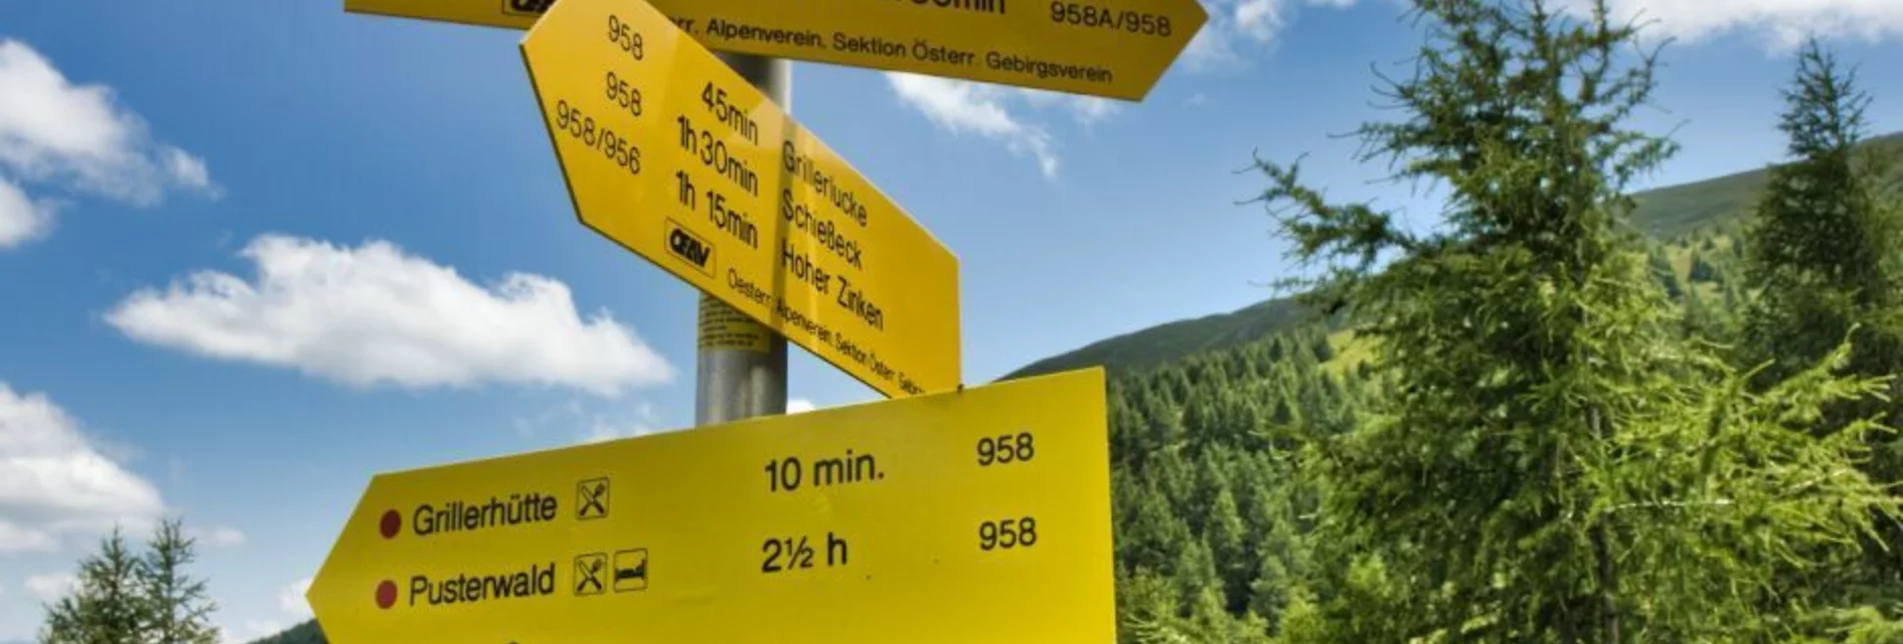 Wanderung Schießeck von Pusterwald - Touren-Impression #1 | © Weges OG